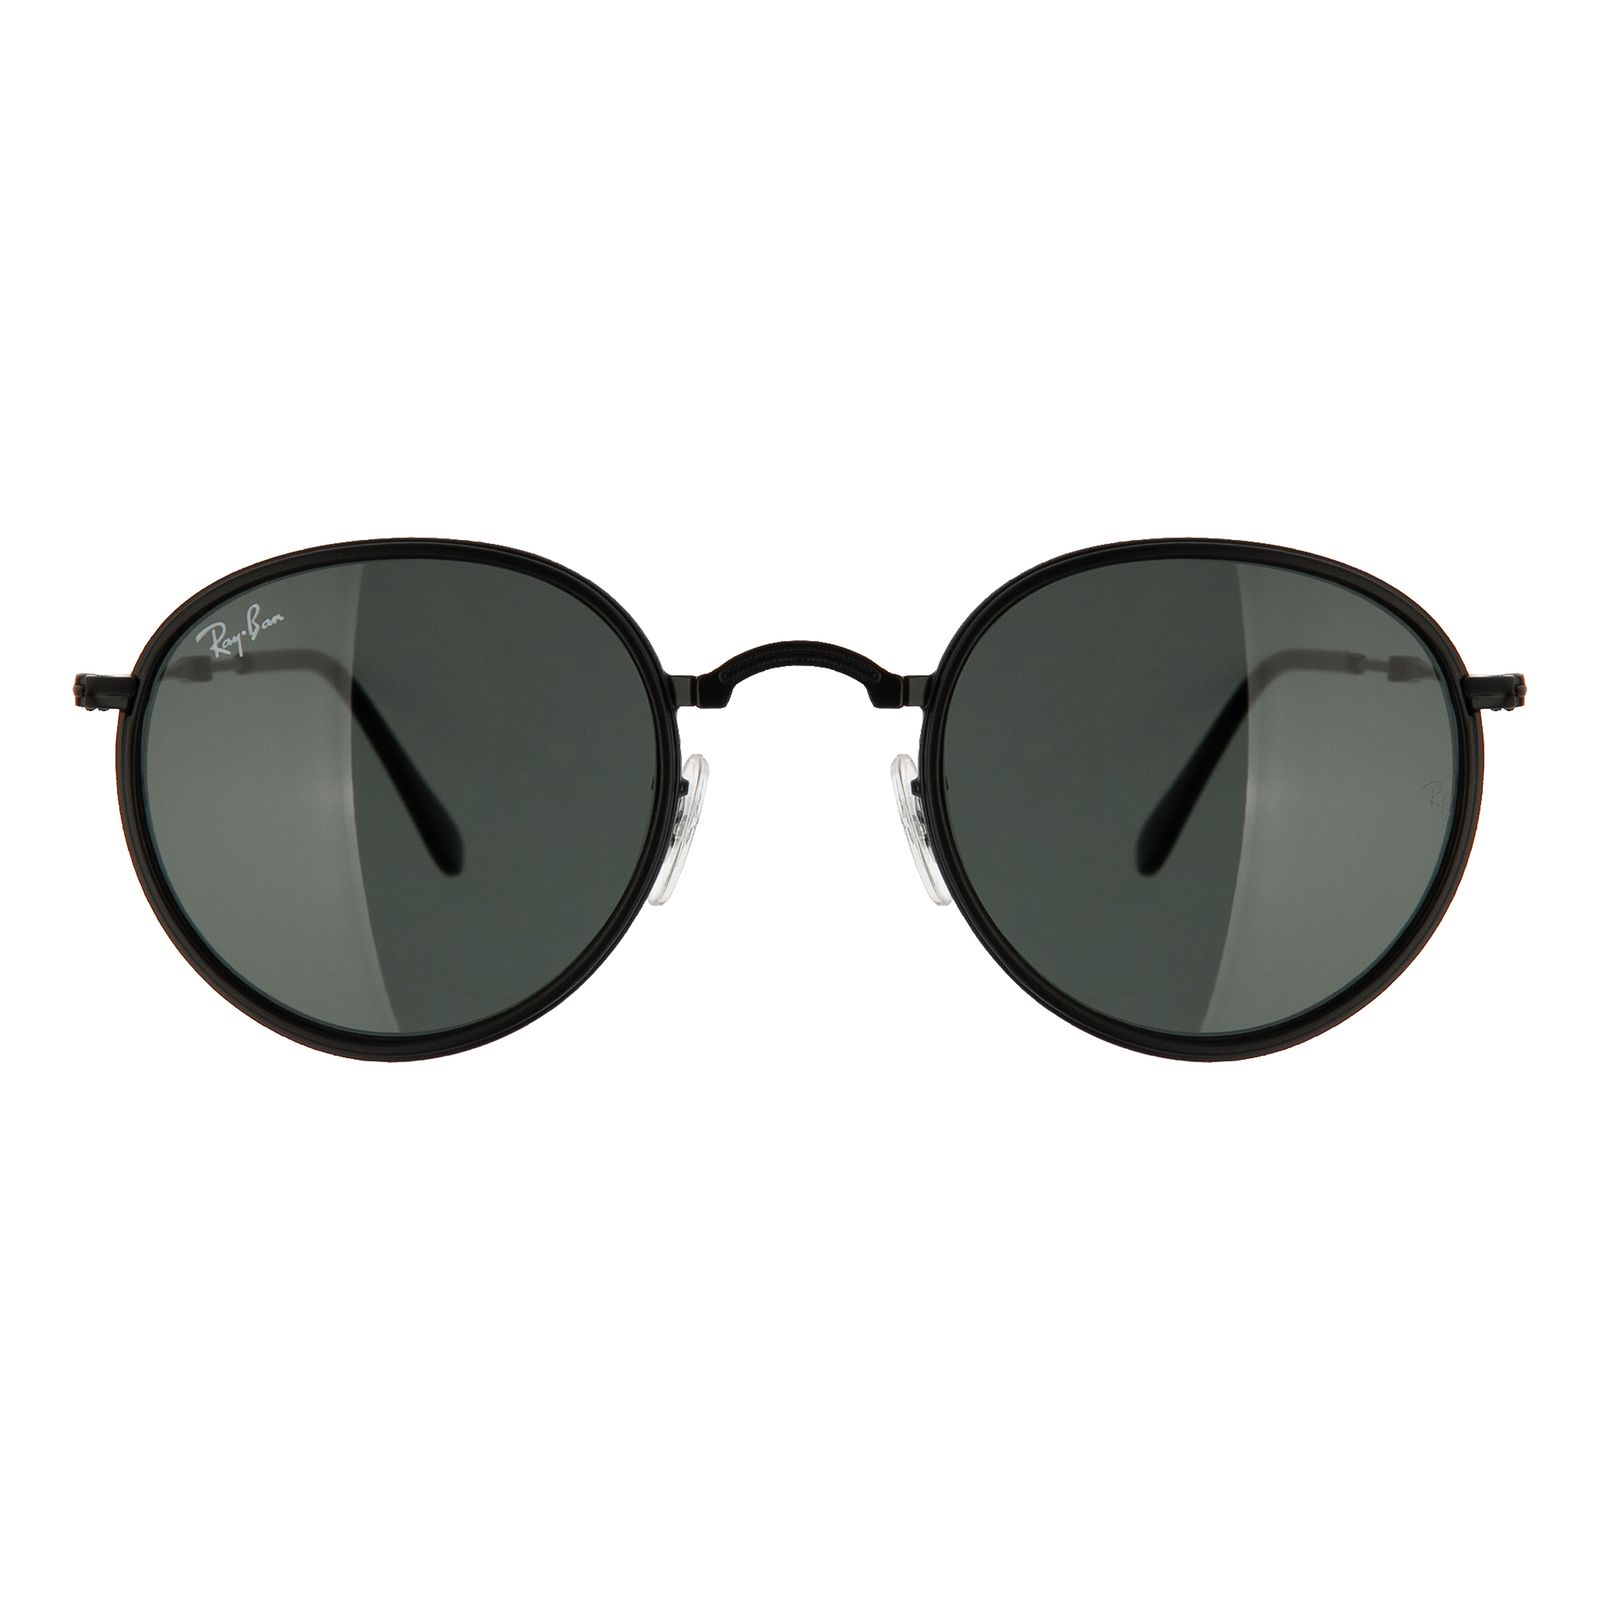 عینک آفتابی ری بن مدل 3517-002/62 -  - 1